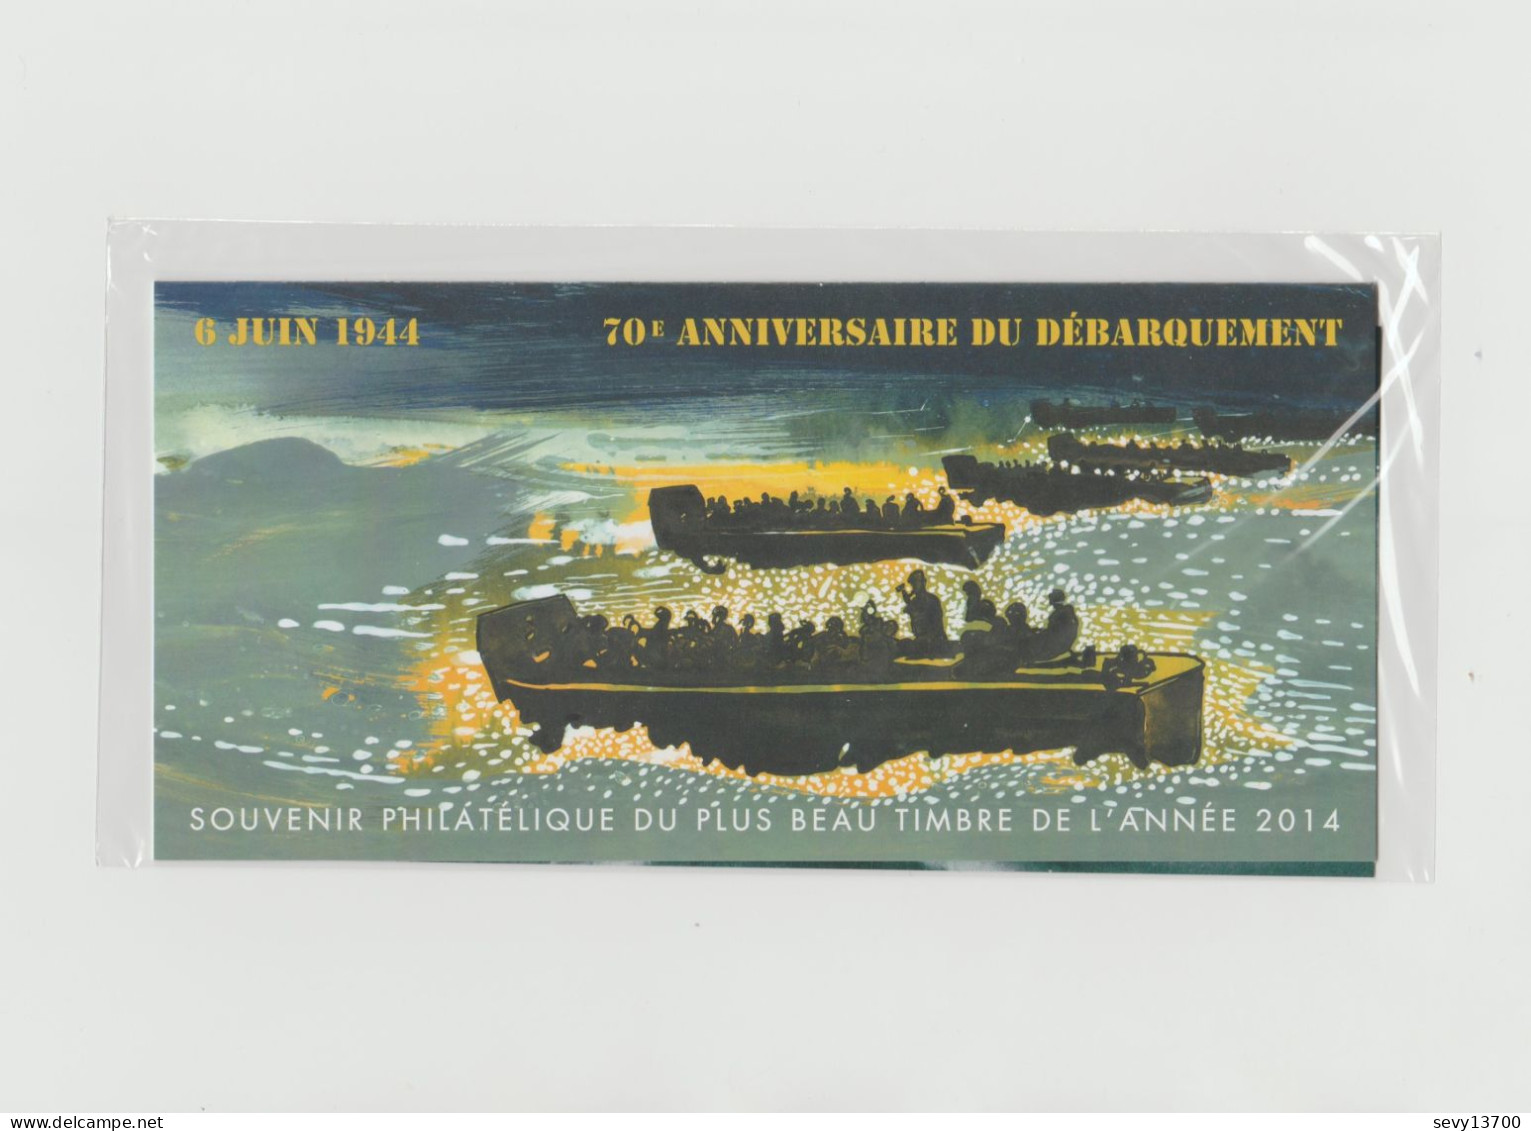 France 2015 - Bloc Souvenir Philatélique - 6 Juin 1944 70ème Anniversaire Du Débarquement N° 114 - Neuf Sous Blister - Souvenir Blocks & Sheetlets